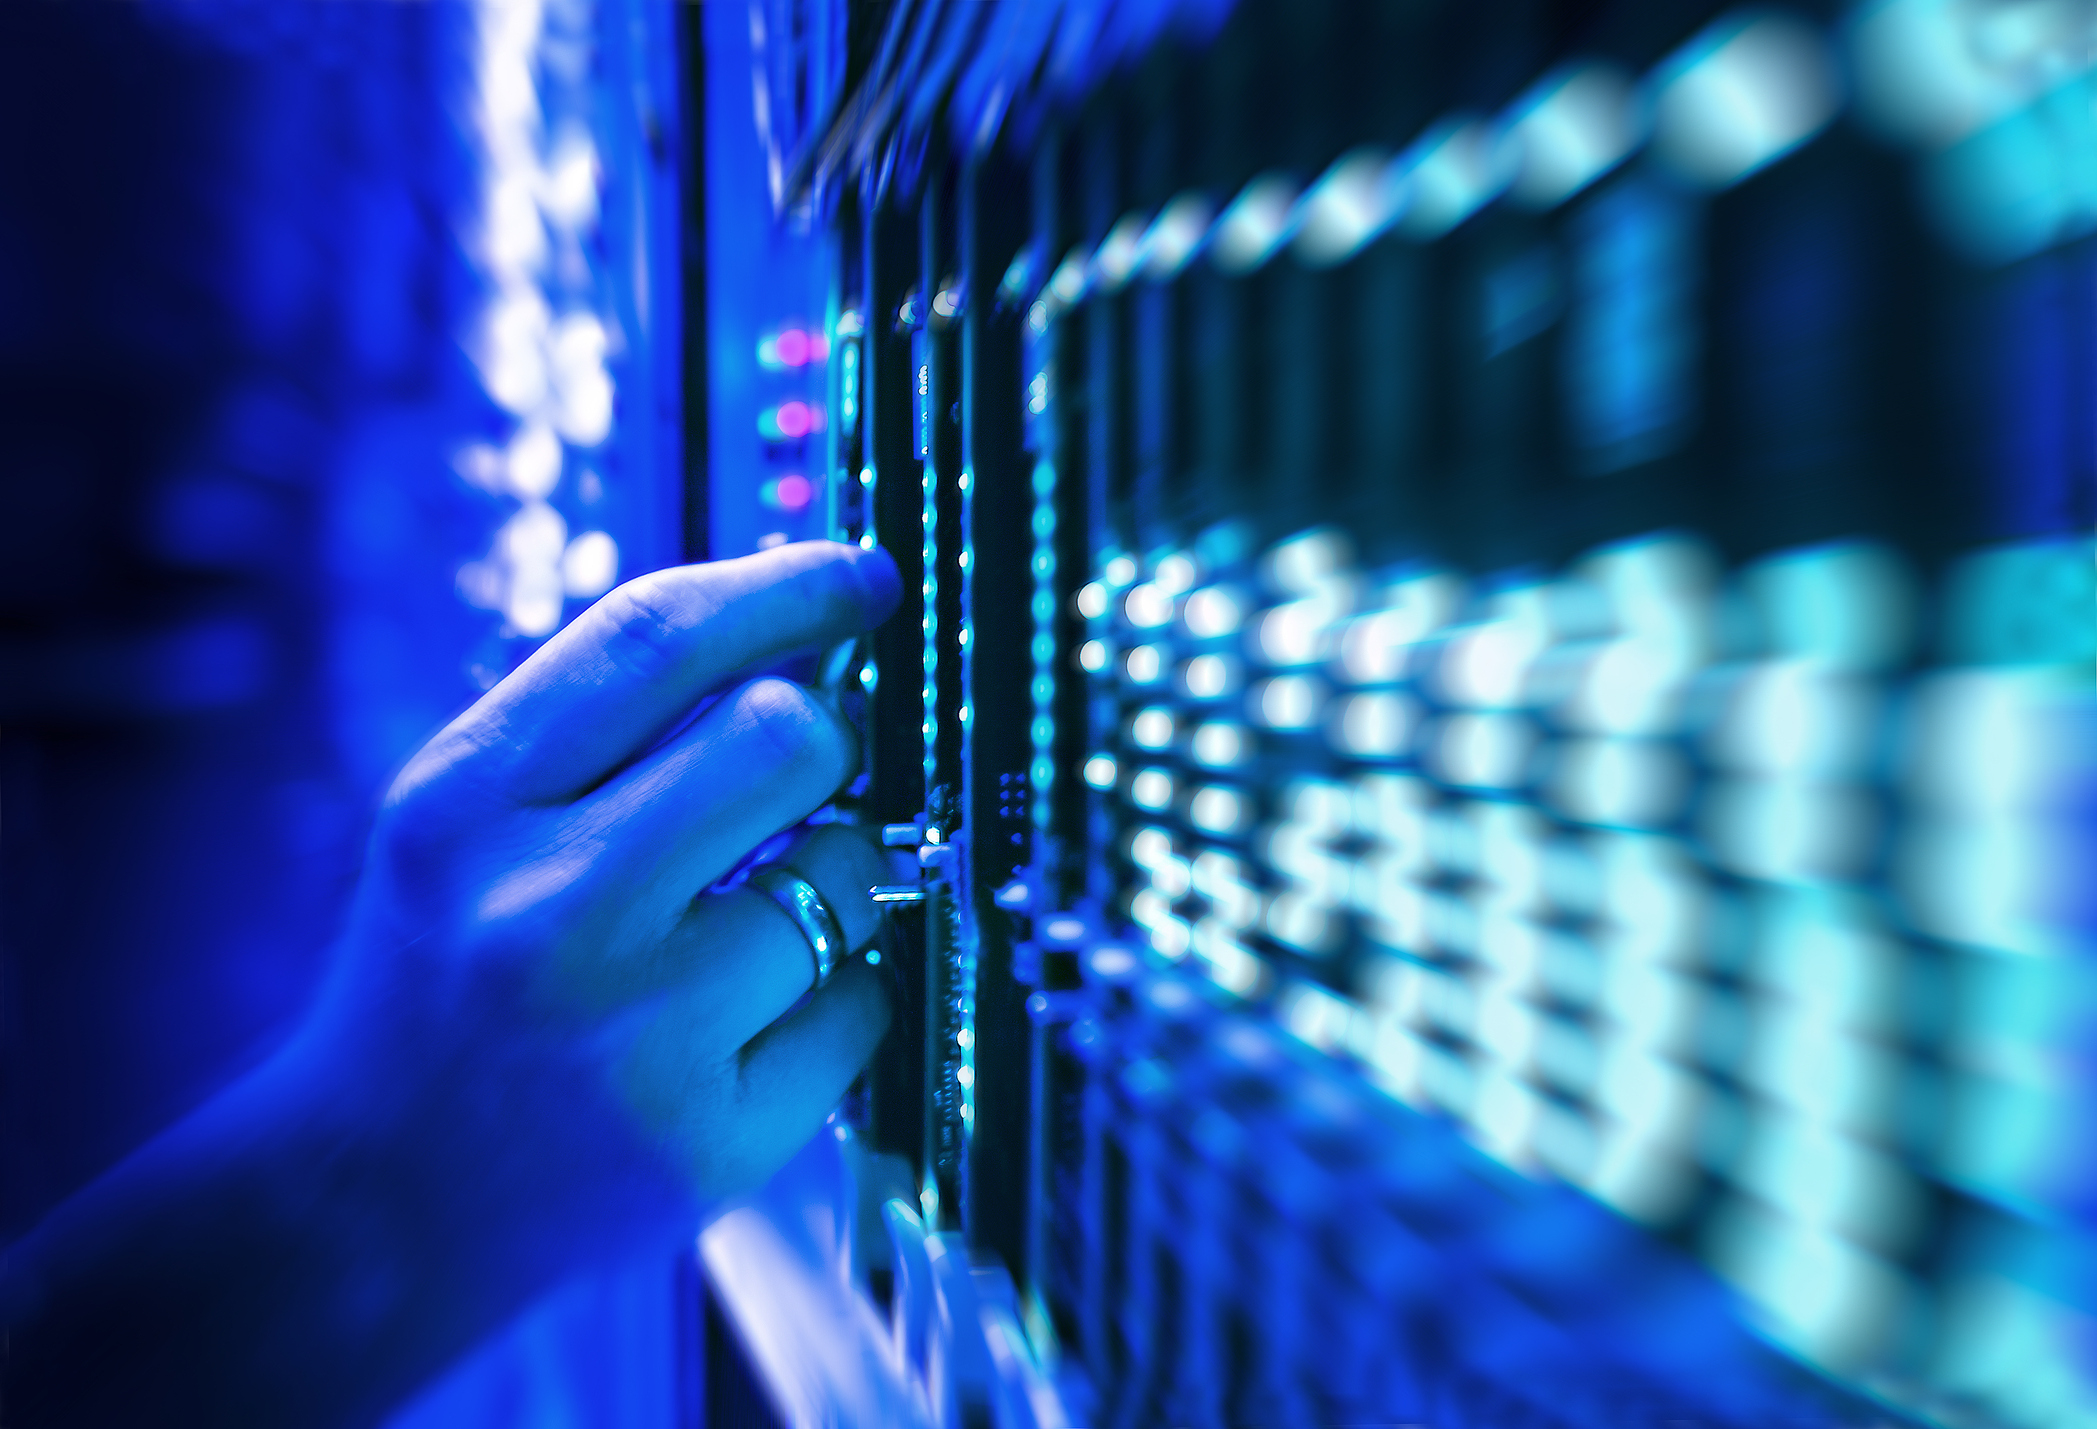 teknisi server jaringan di pusat data bermandikan cahaya biru